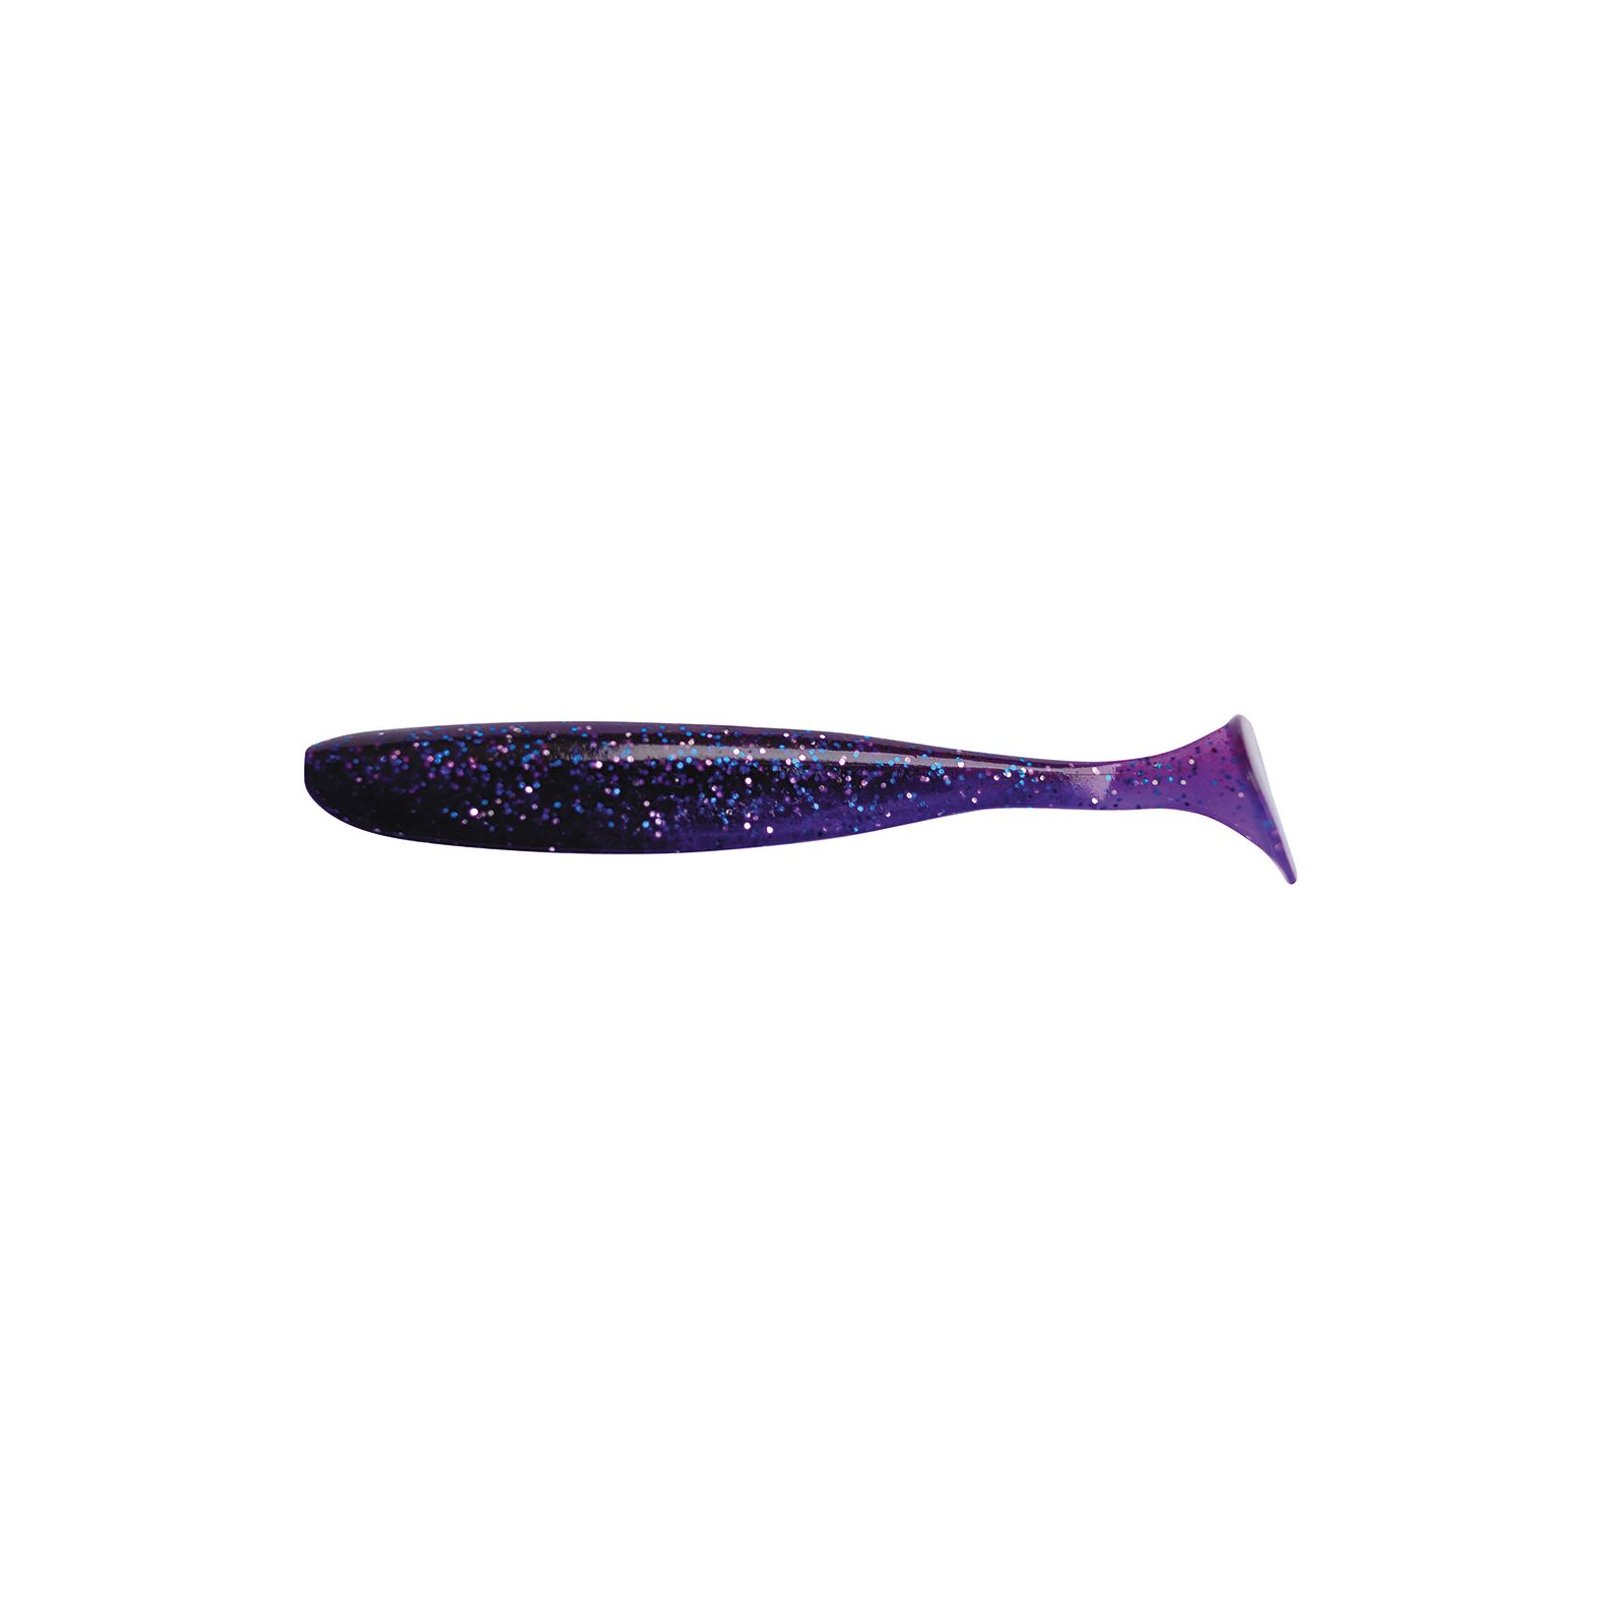 Силикон рыболовный Keitech Easy Shiner 2" (12 шт/упак) ц:ea#04 violet (1551.03.61)